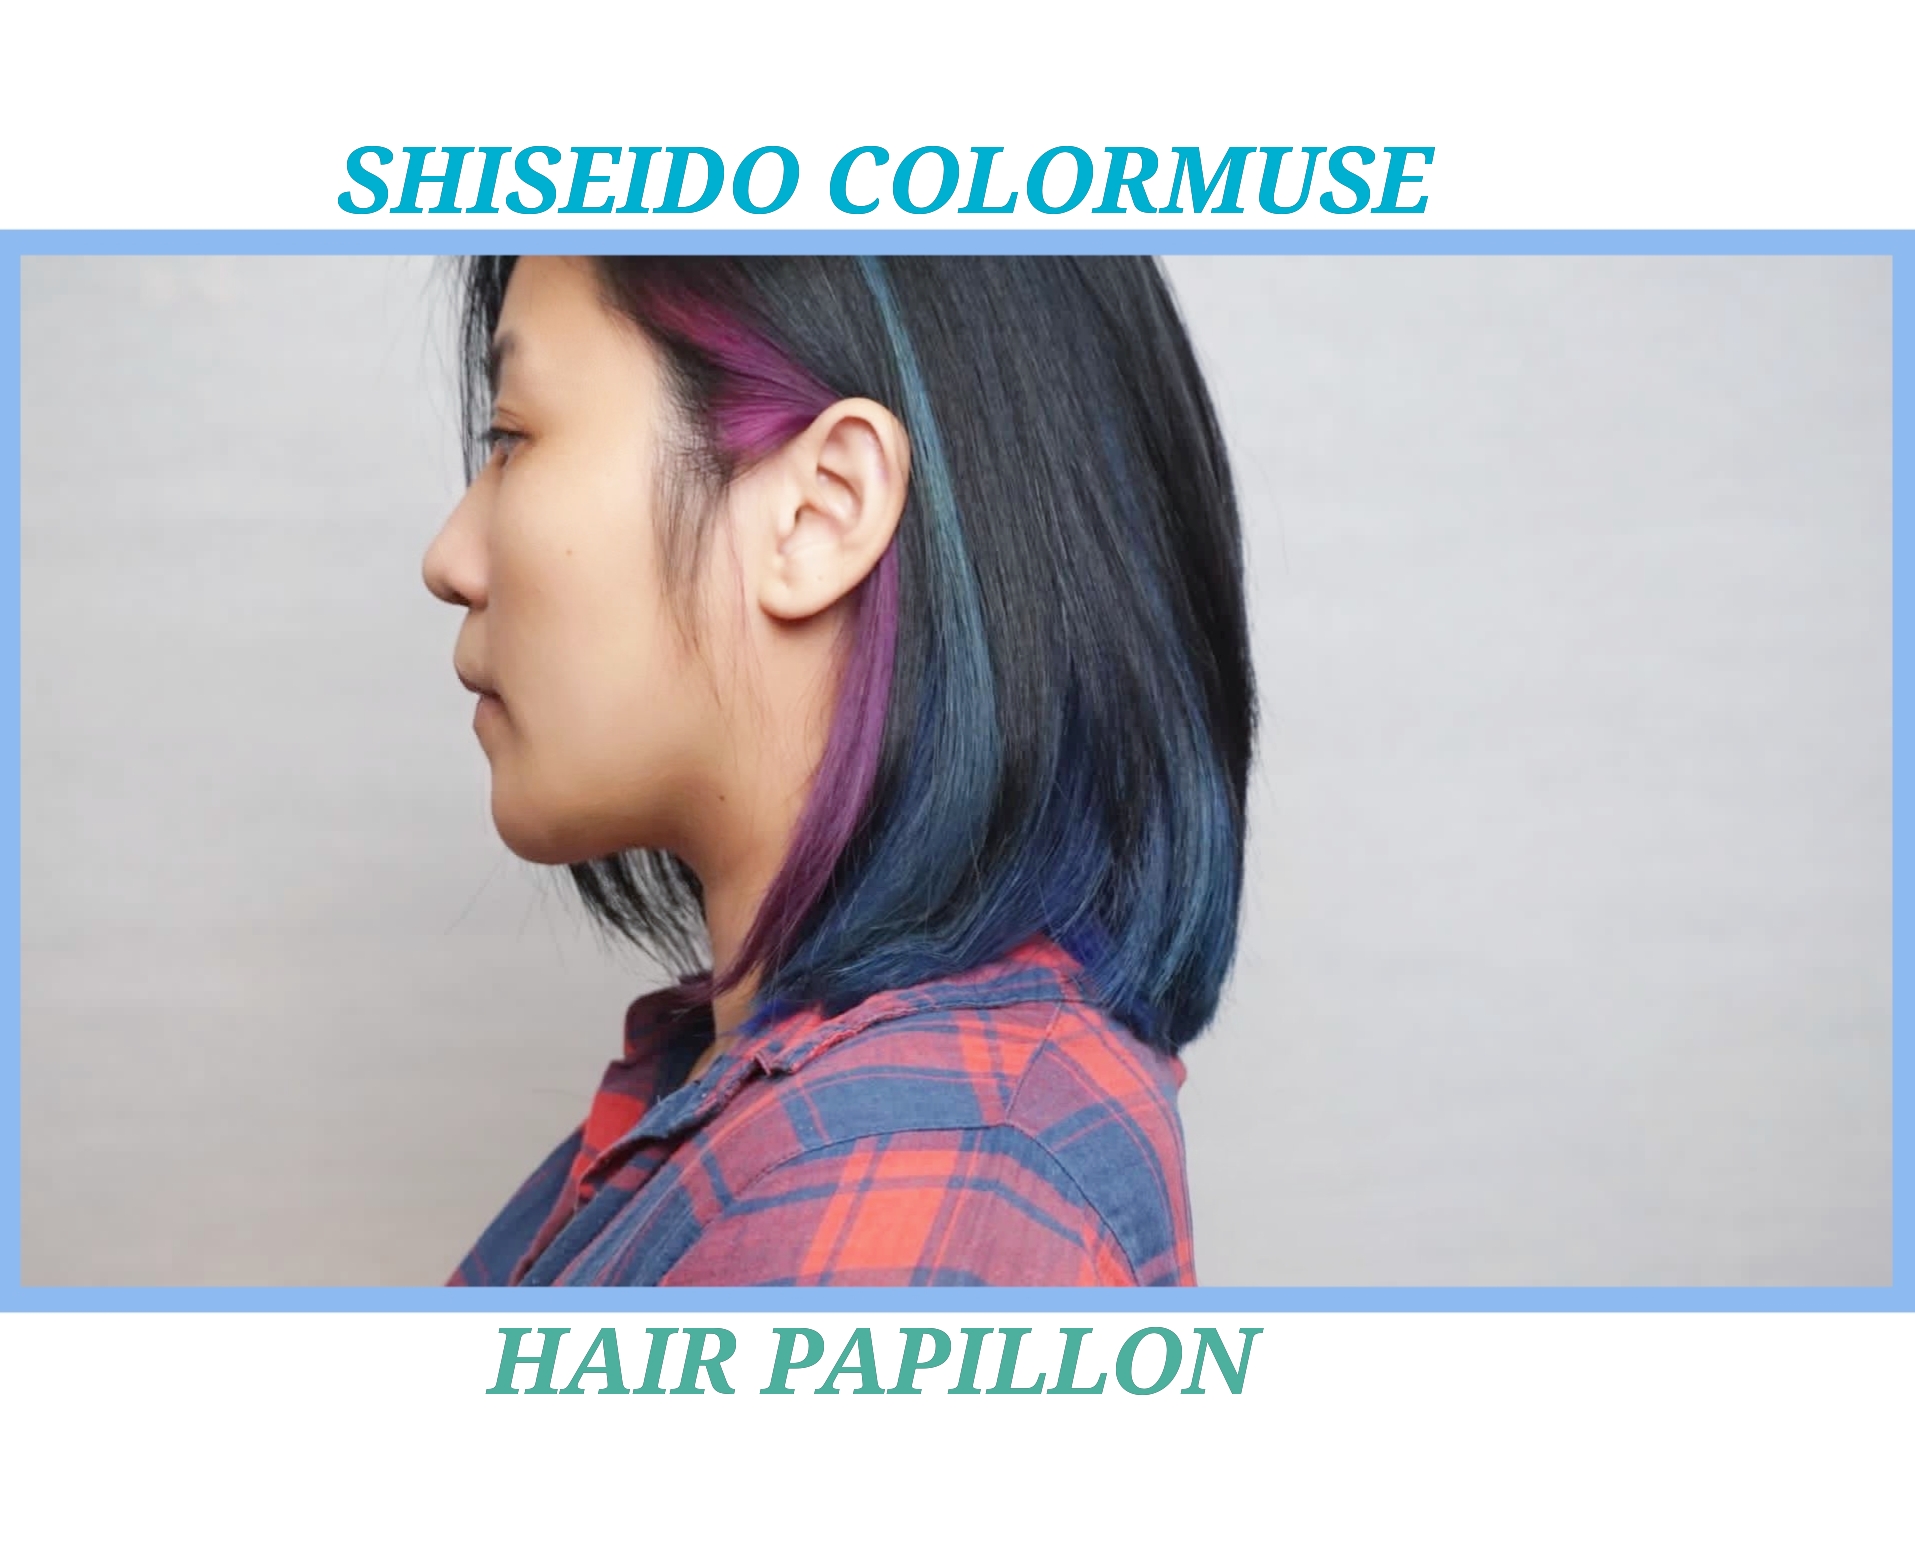 Portfolio:shiseido ultist